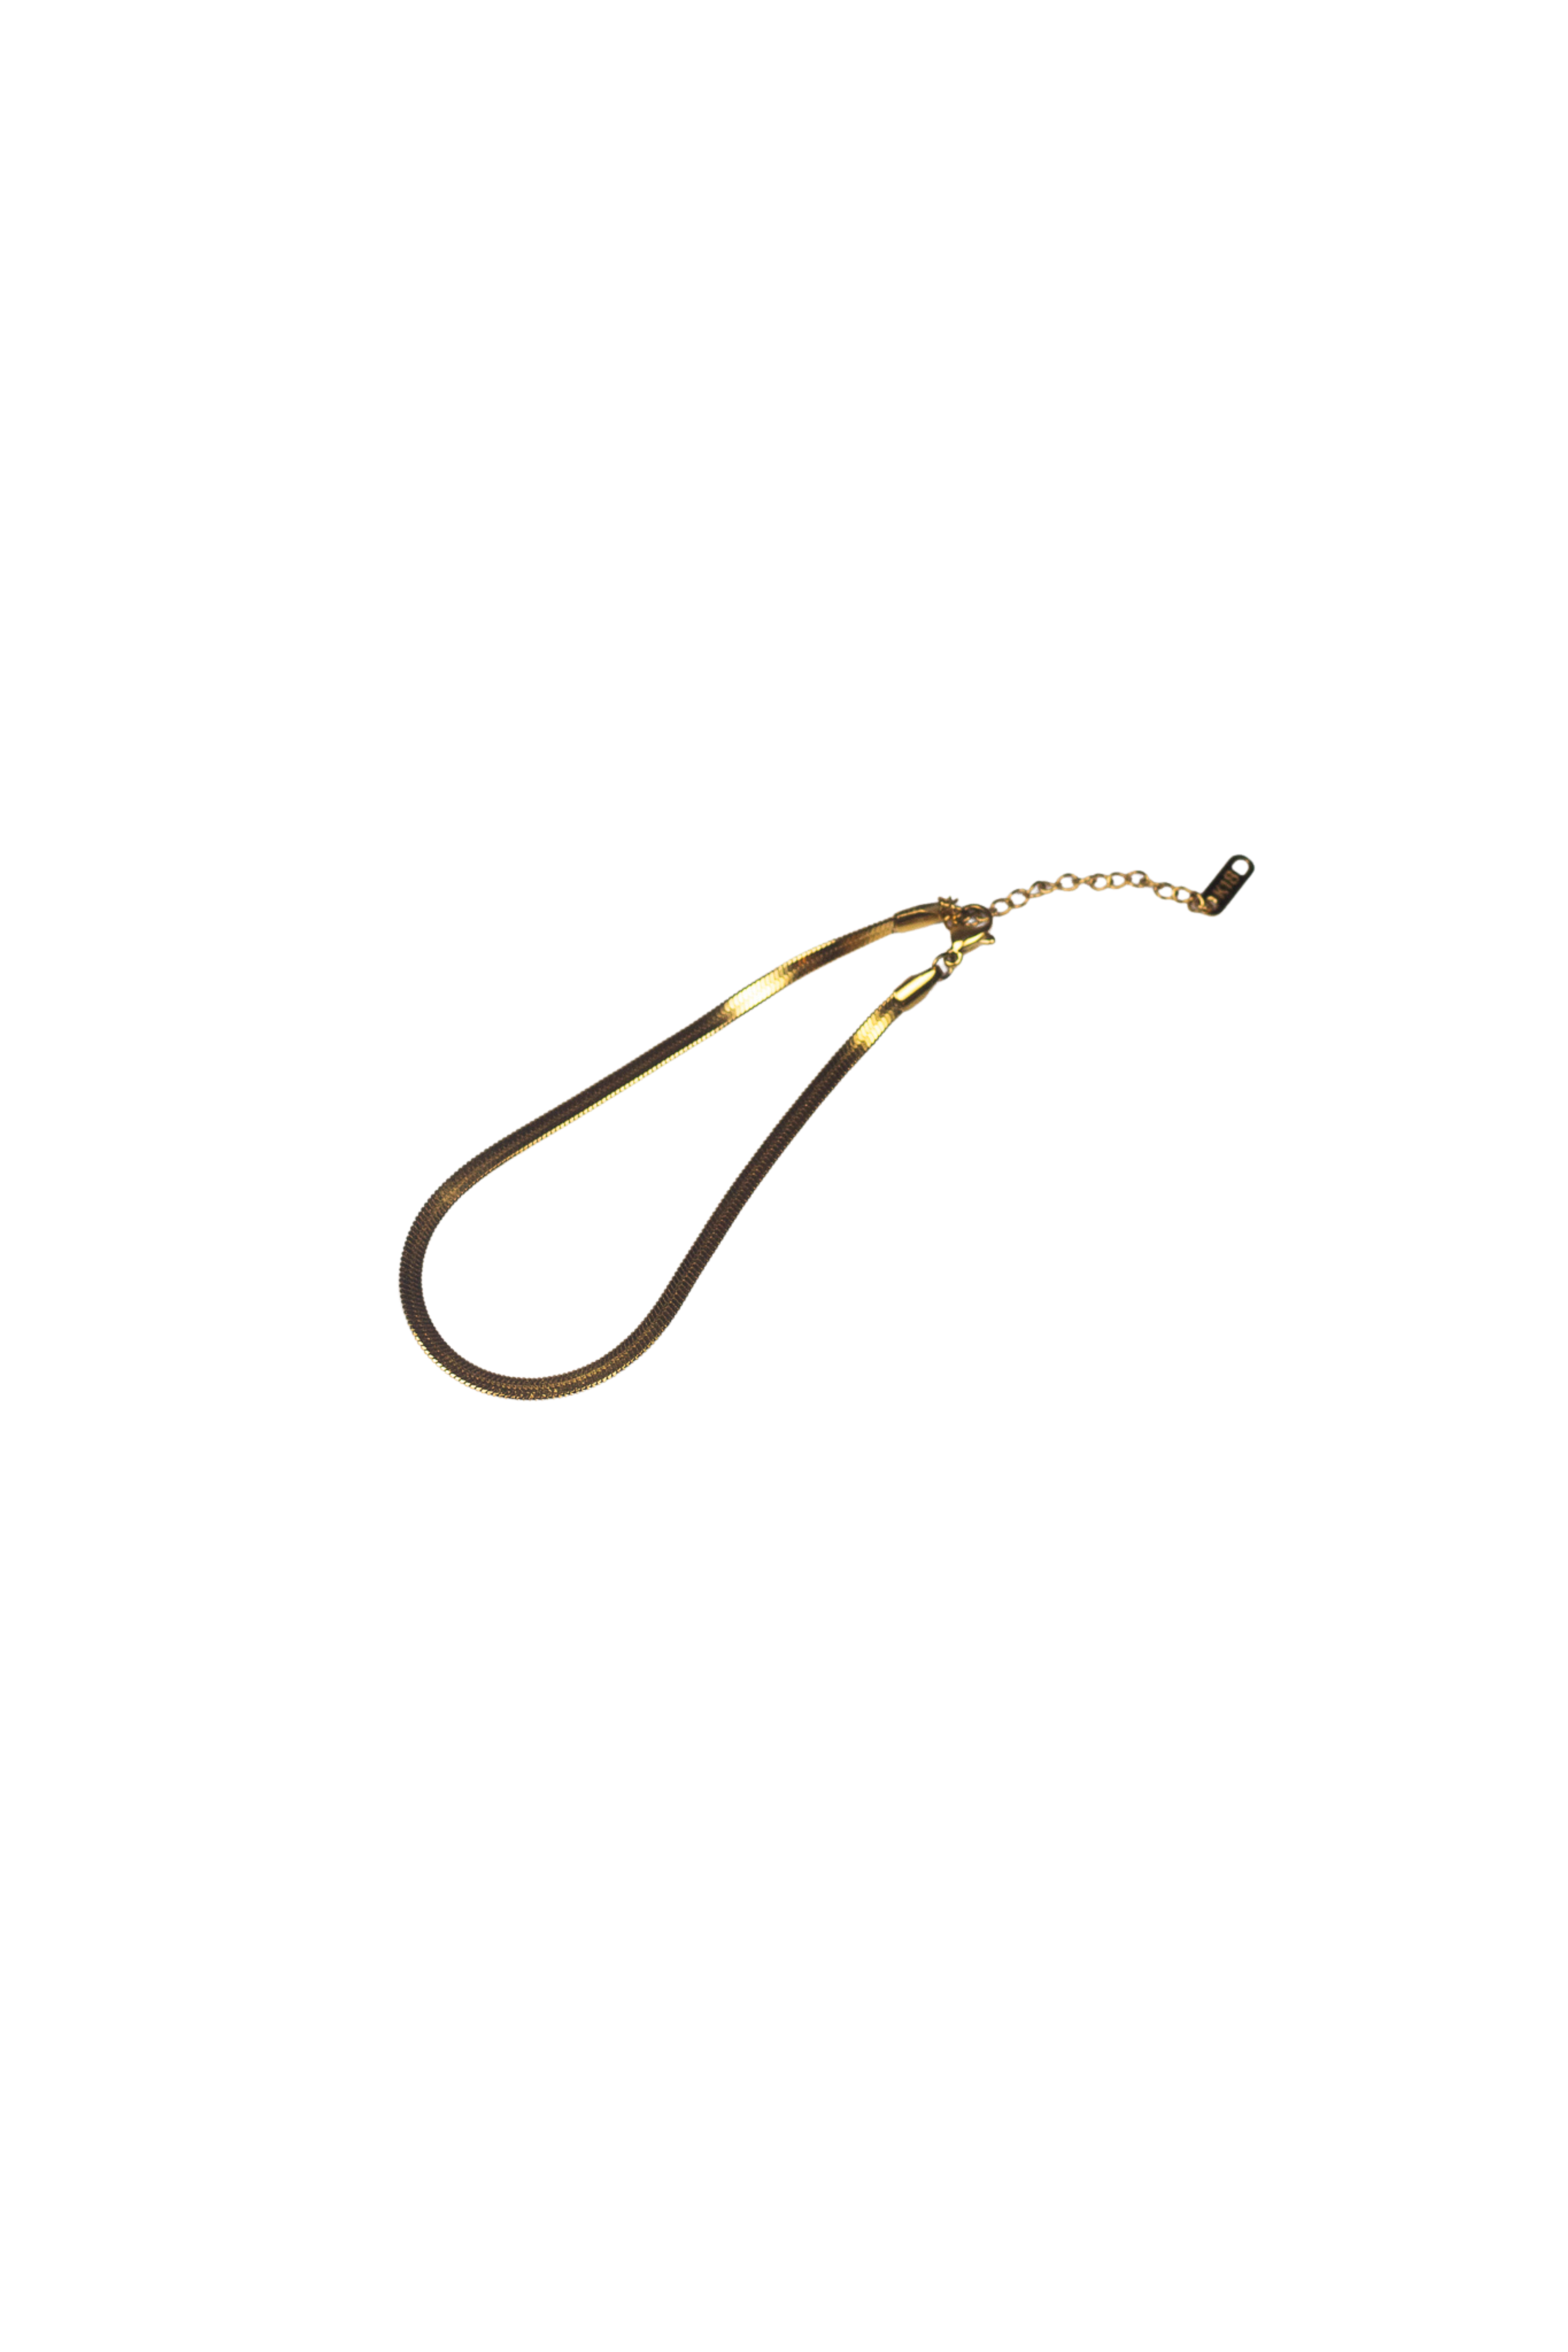 18K gold snake chain anklet. Named "The Steph" Herringbone Anklet by E's Element. 